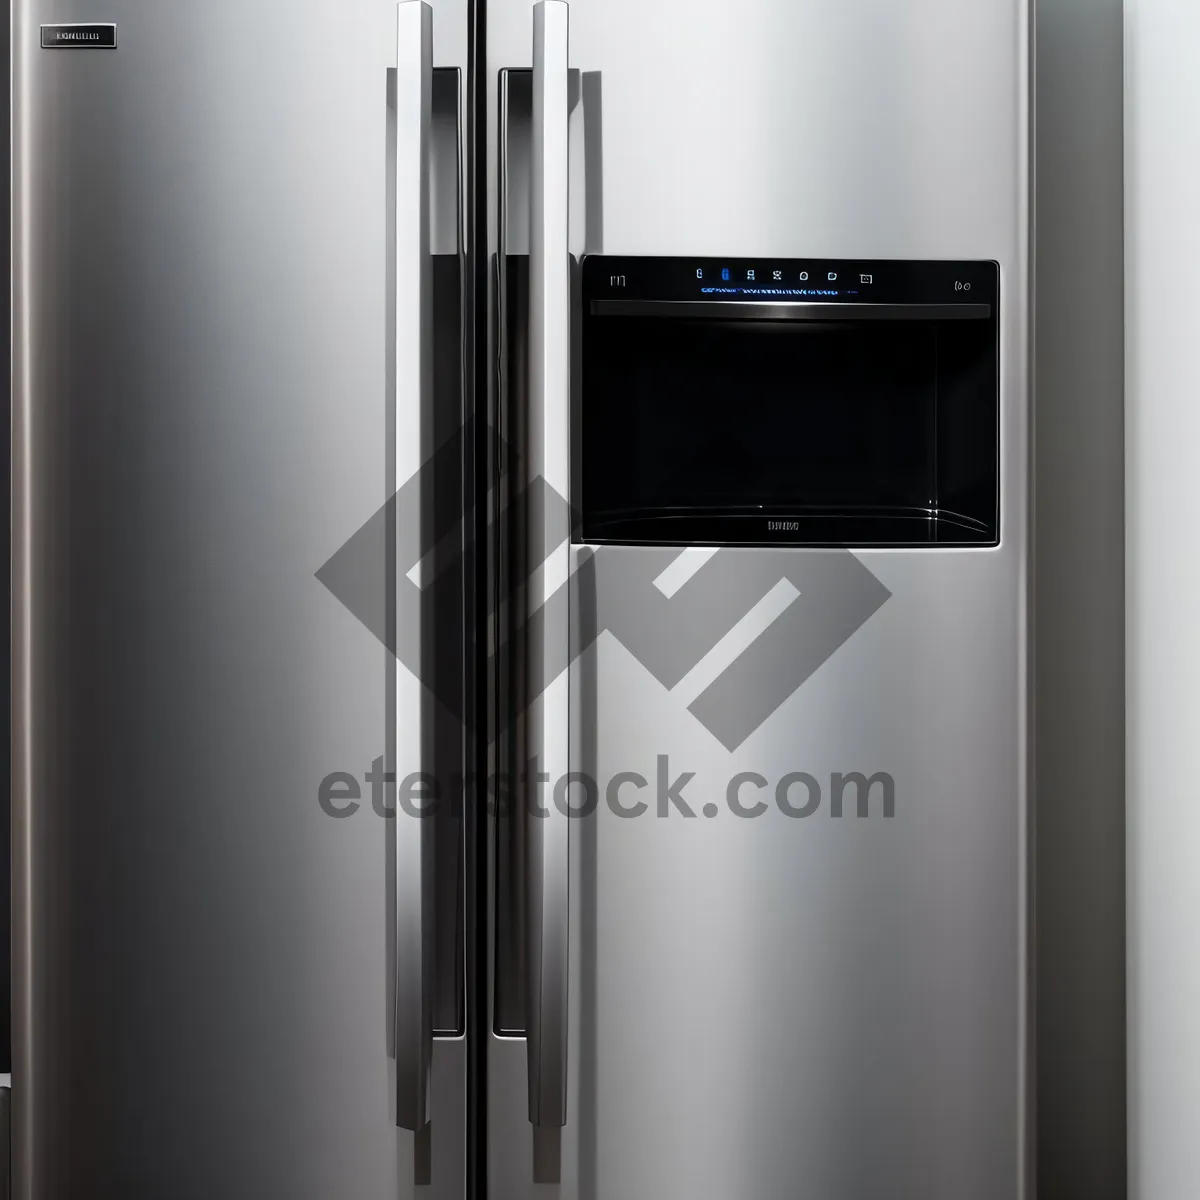 Picture of Modern Kitchen Refrigerator - Sleek White Appliance